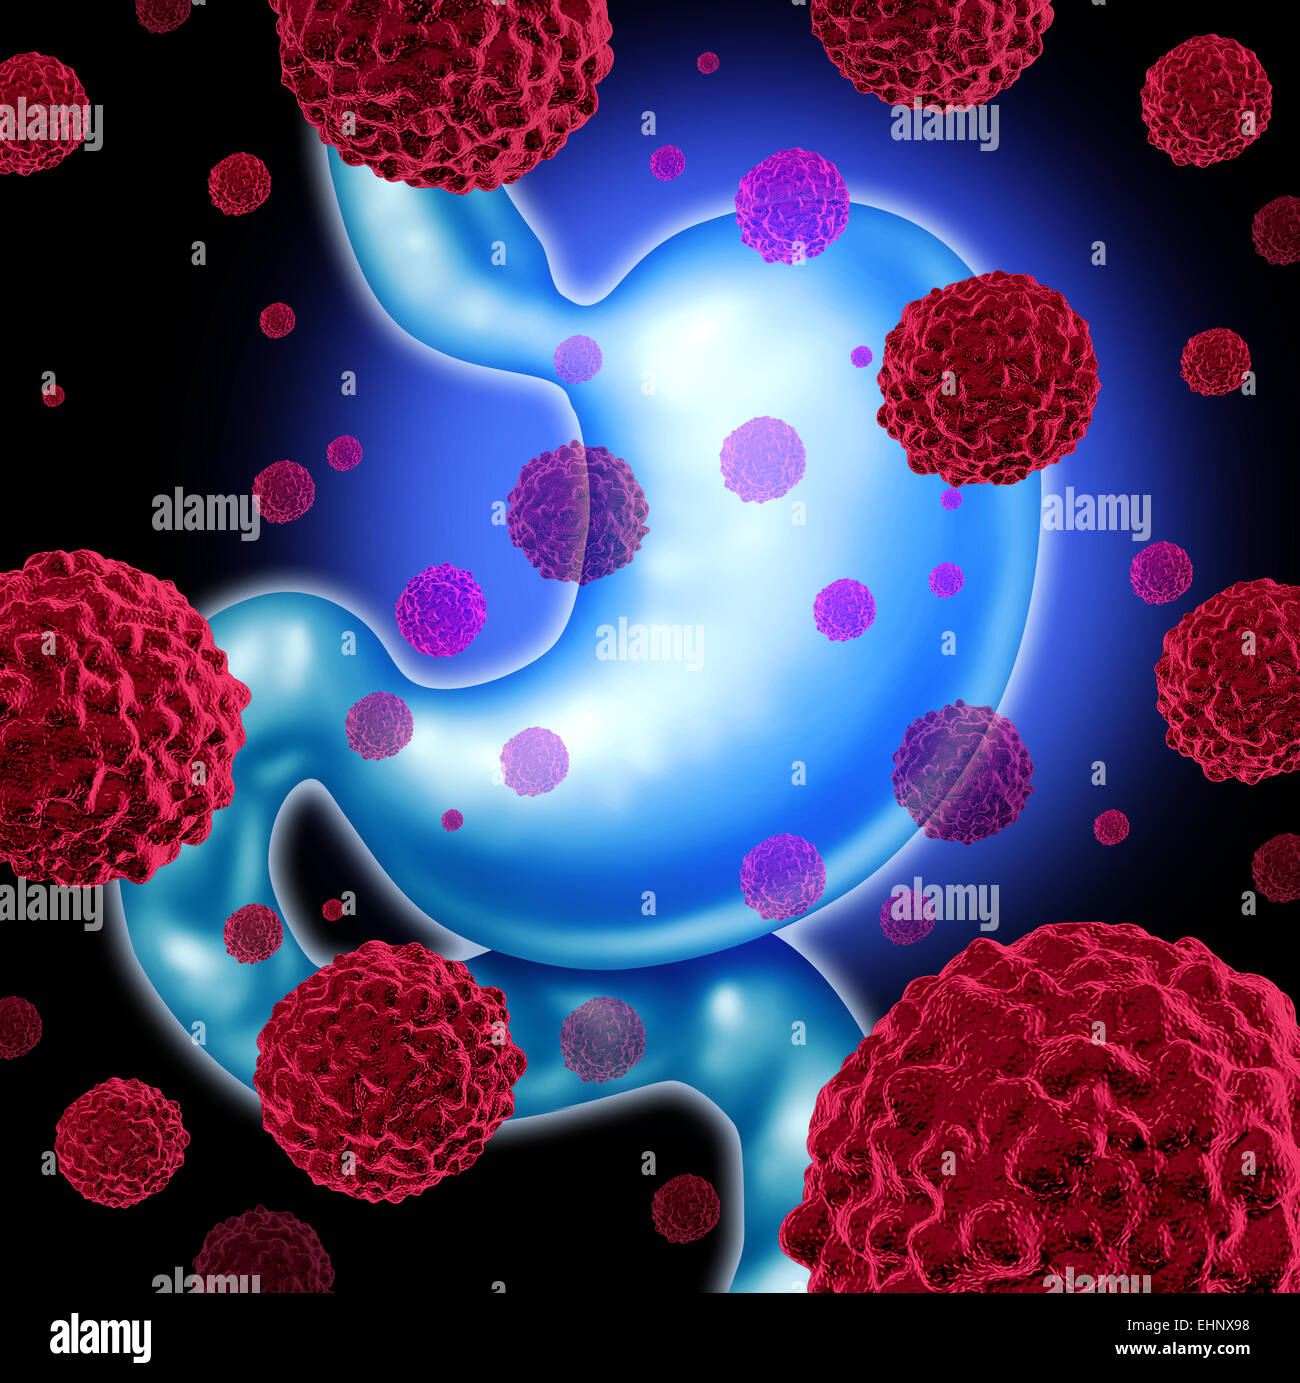 Le cancer de l'estomac et concept de soins de santé digestive avec le symbole de la maladie d'organe interne de l'abdomen avec les cellules cancéreuses dans le corps humain. Banque D'Images